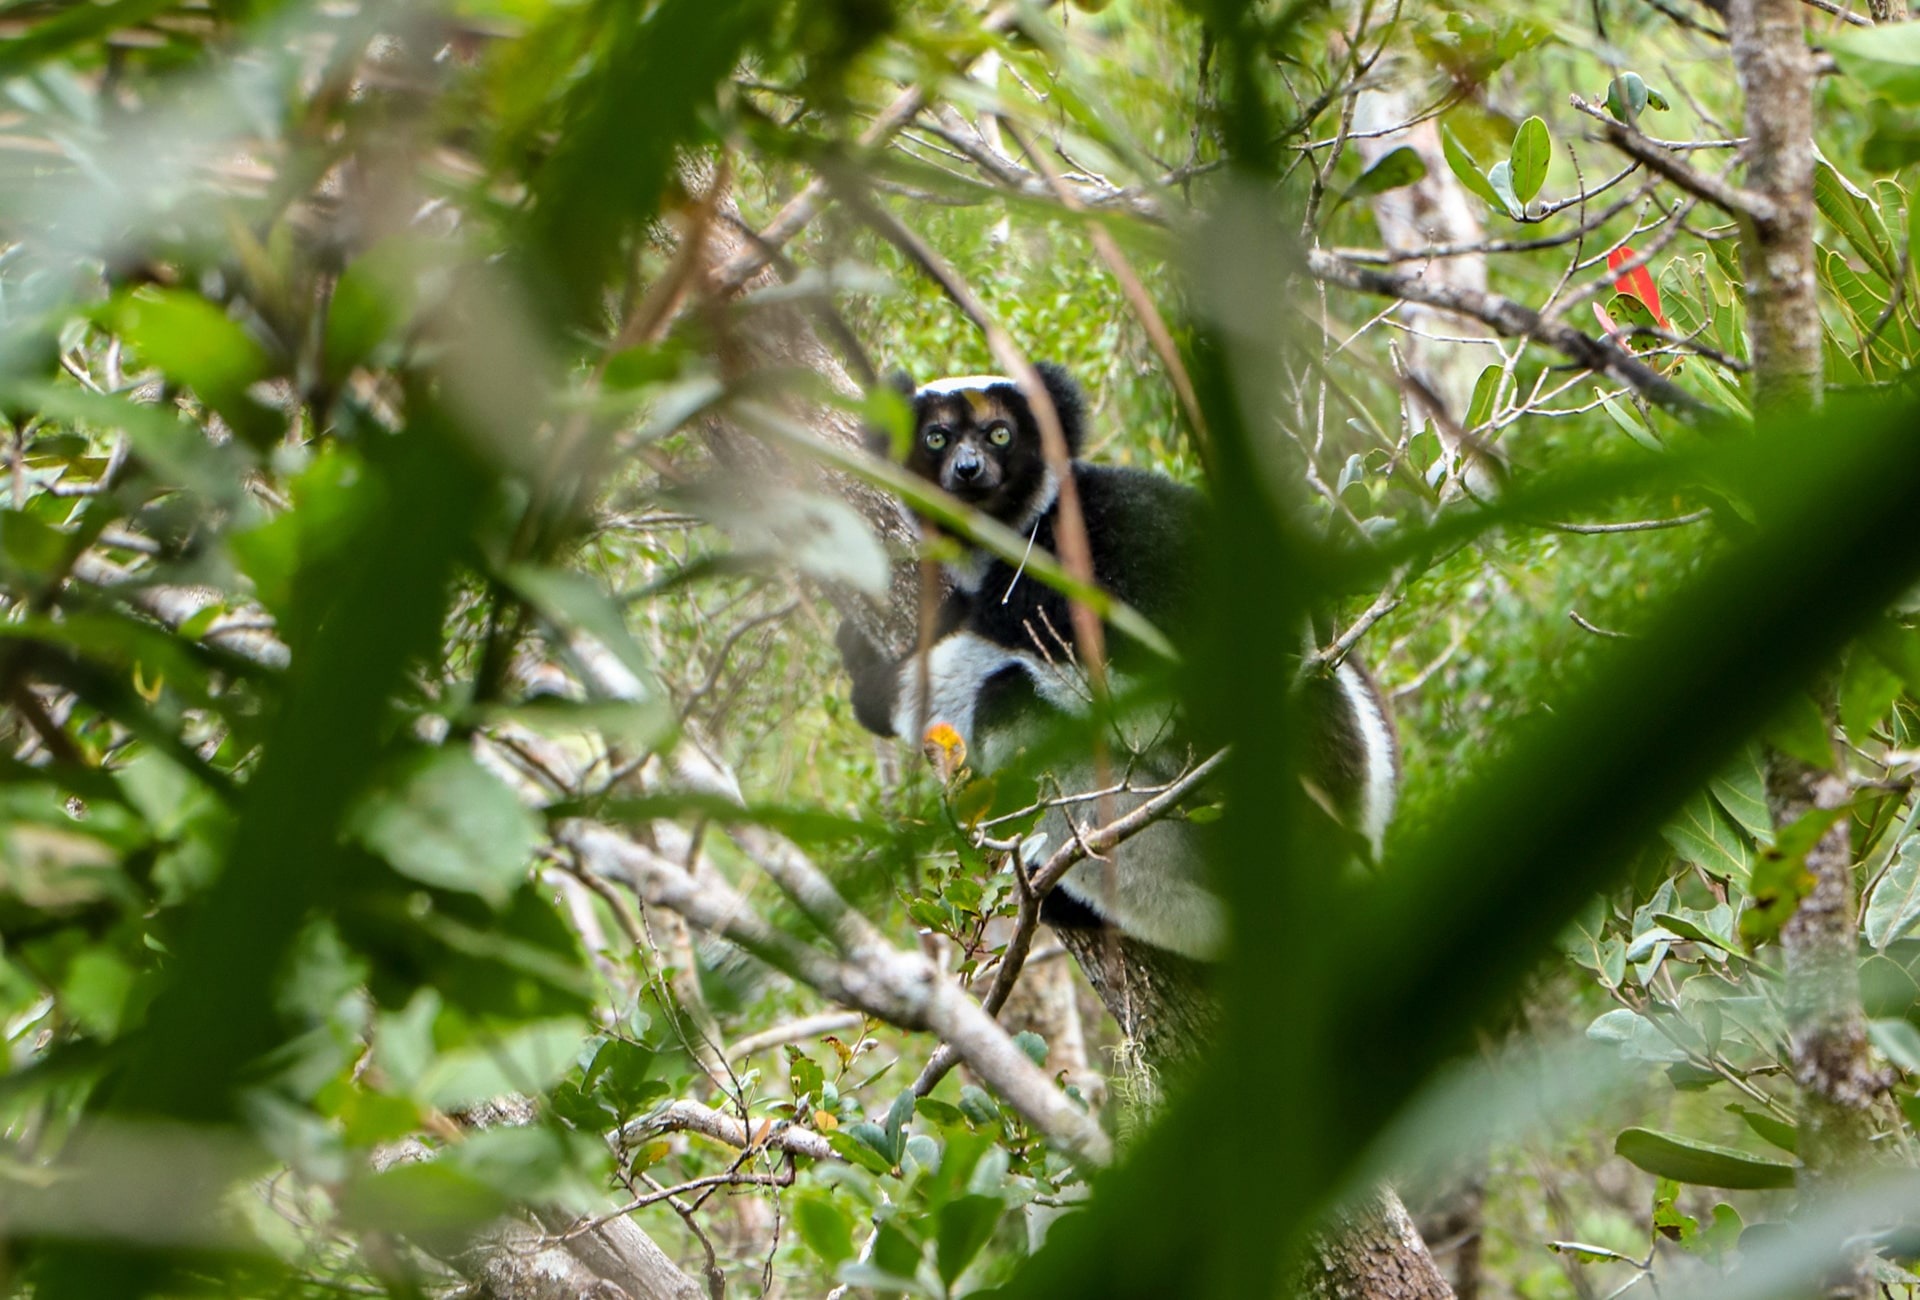 The Indri Lemur, courtesy of L’Homme et l’Environnement